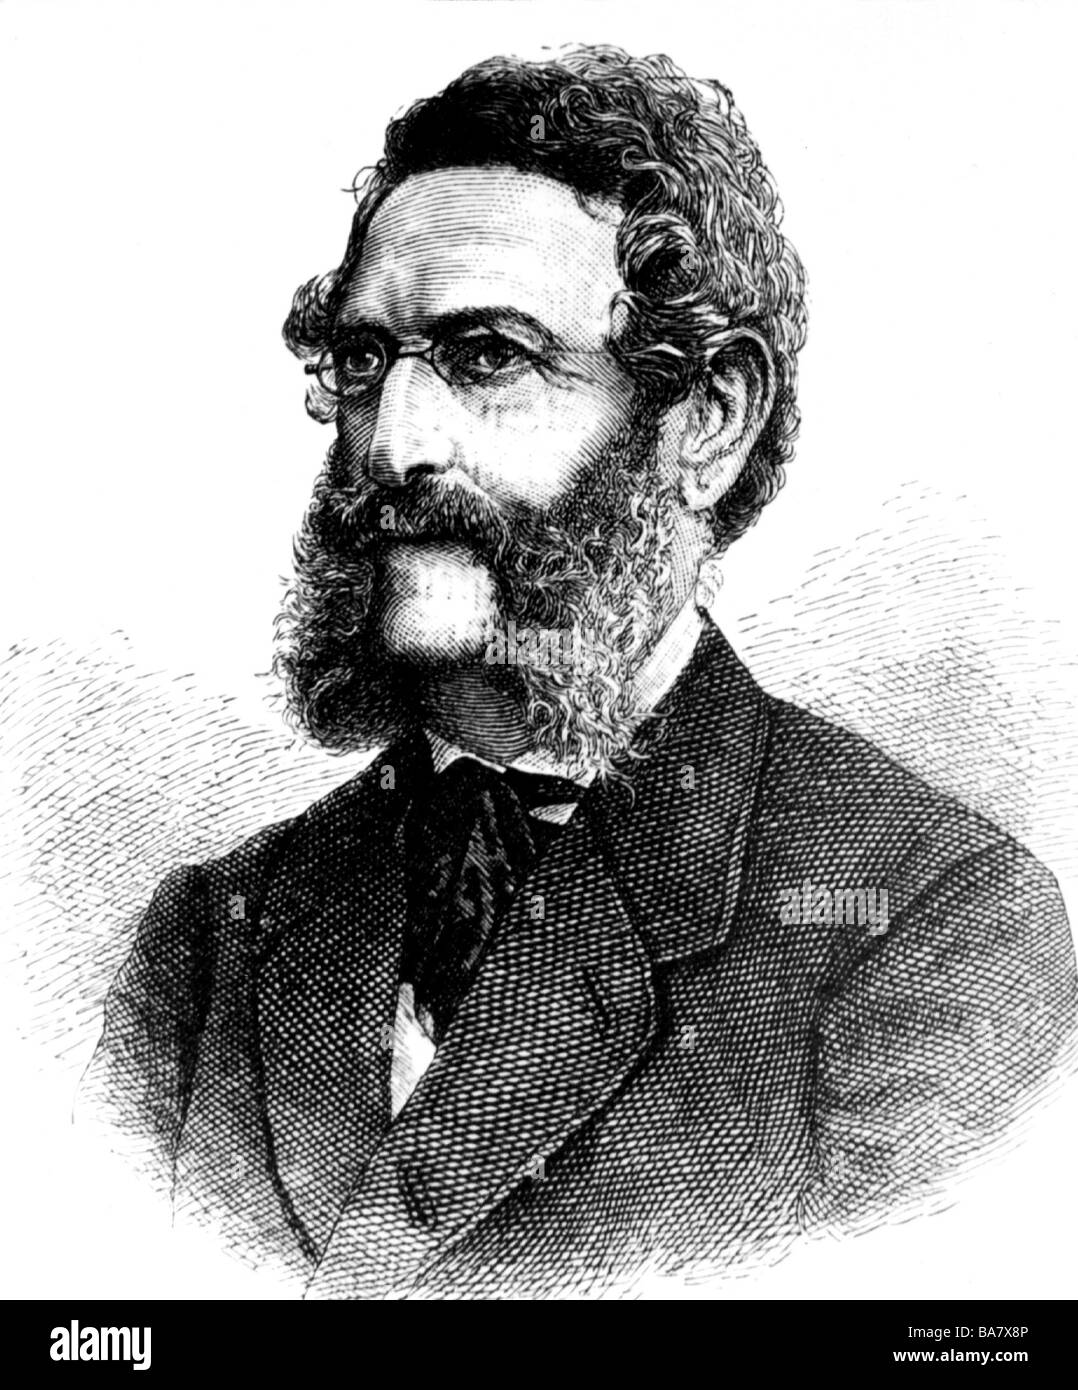 Auersperg, Anton Alexander count, 11.4.1806 - 12.9.1876, autor / escritor austriaco, retrato, grabado en madera, 1874, Foto de stock